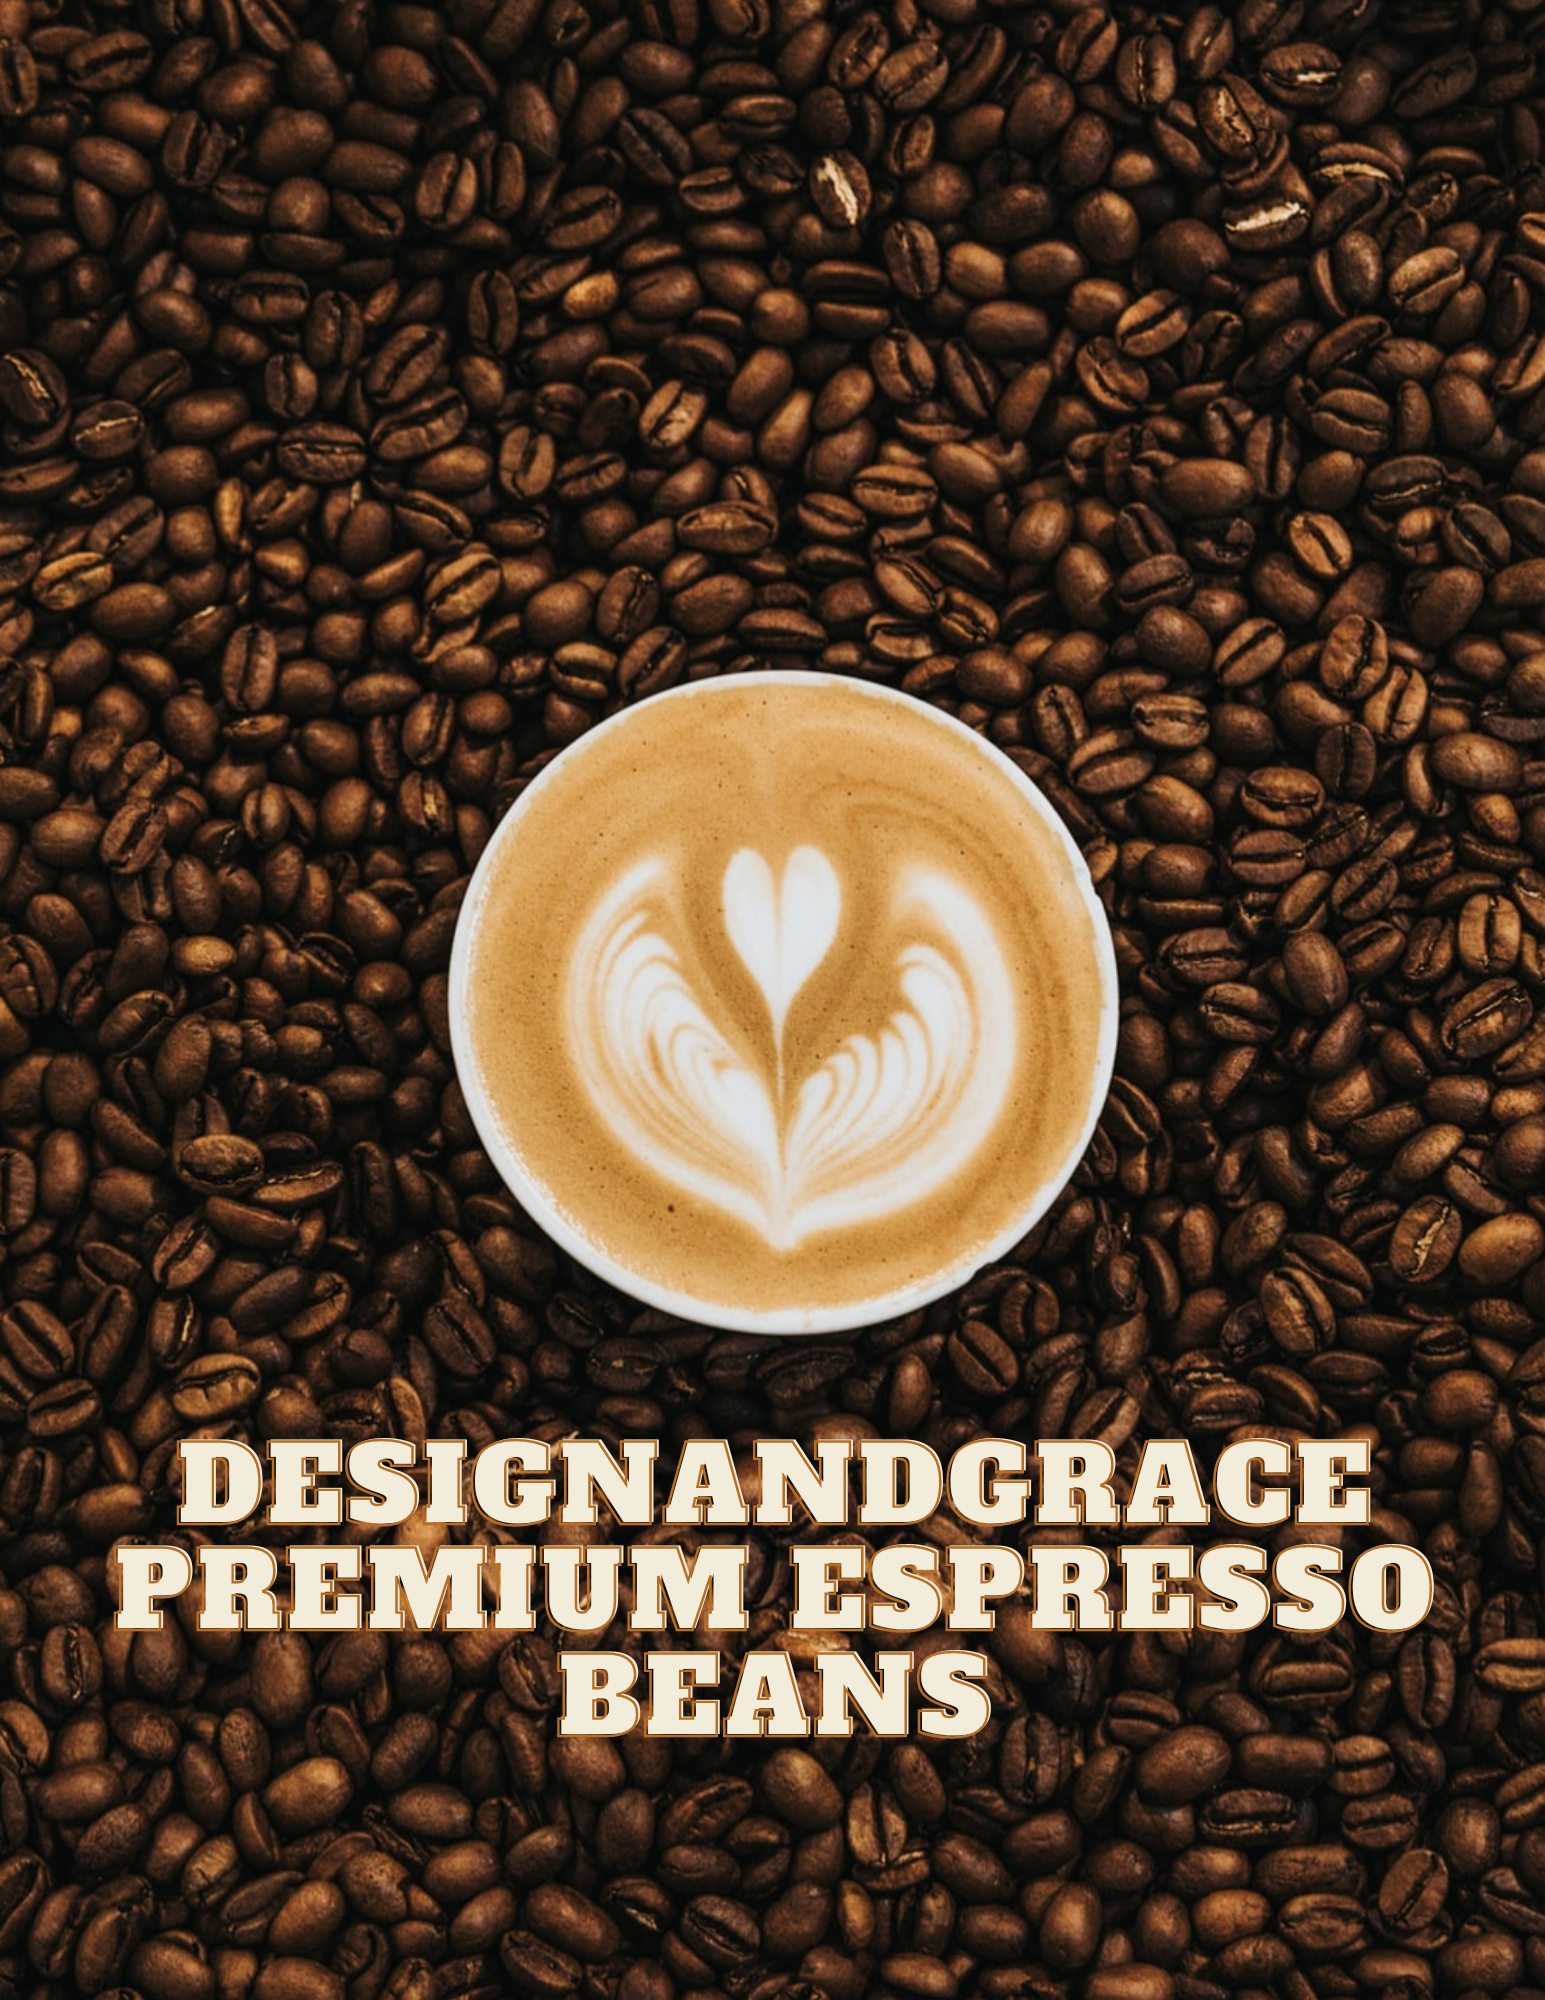 Premium Espresso Beans